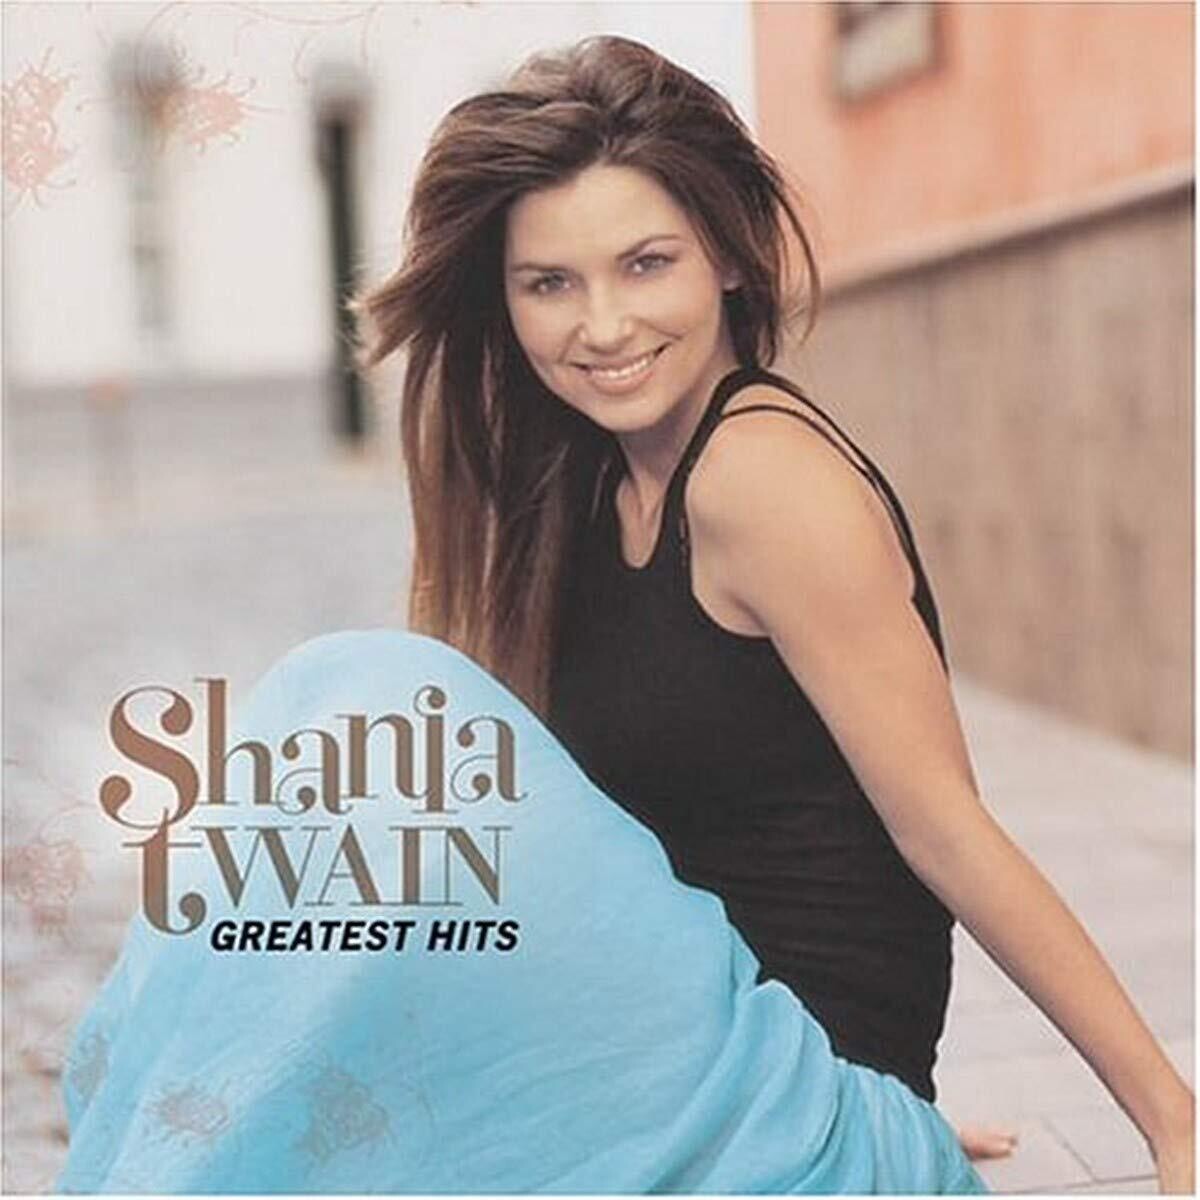 Shania Twain "Greatest Hits" 